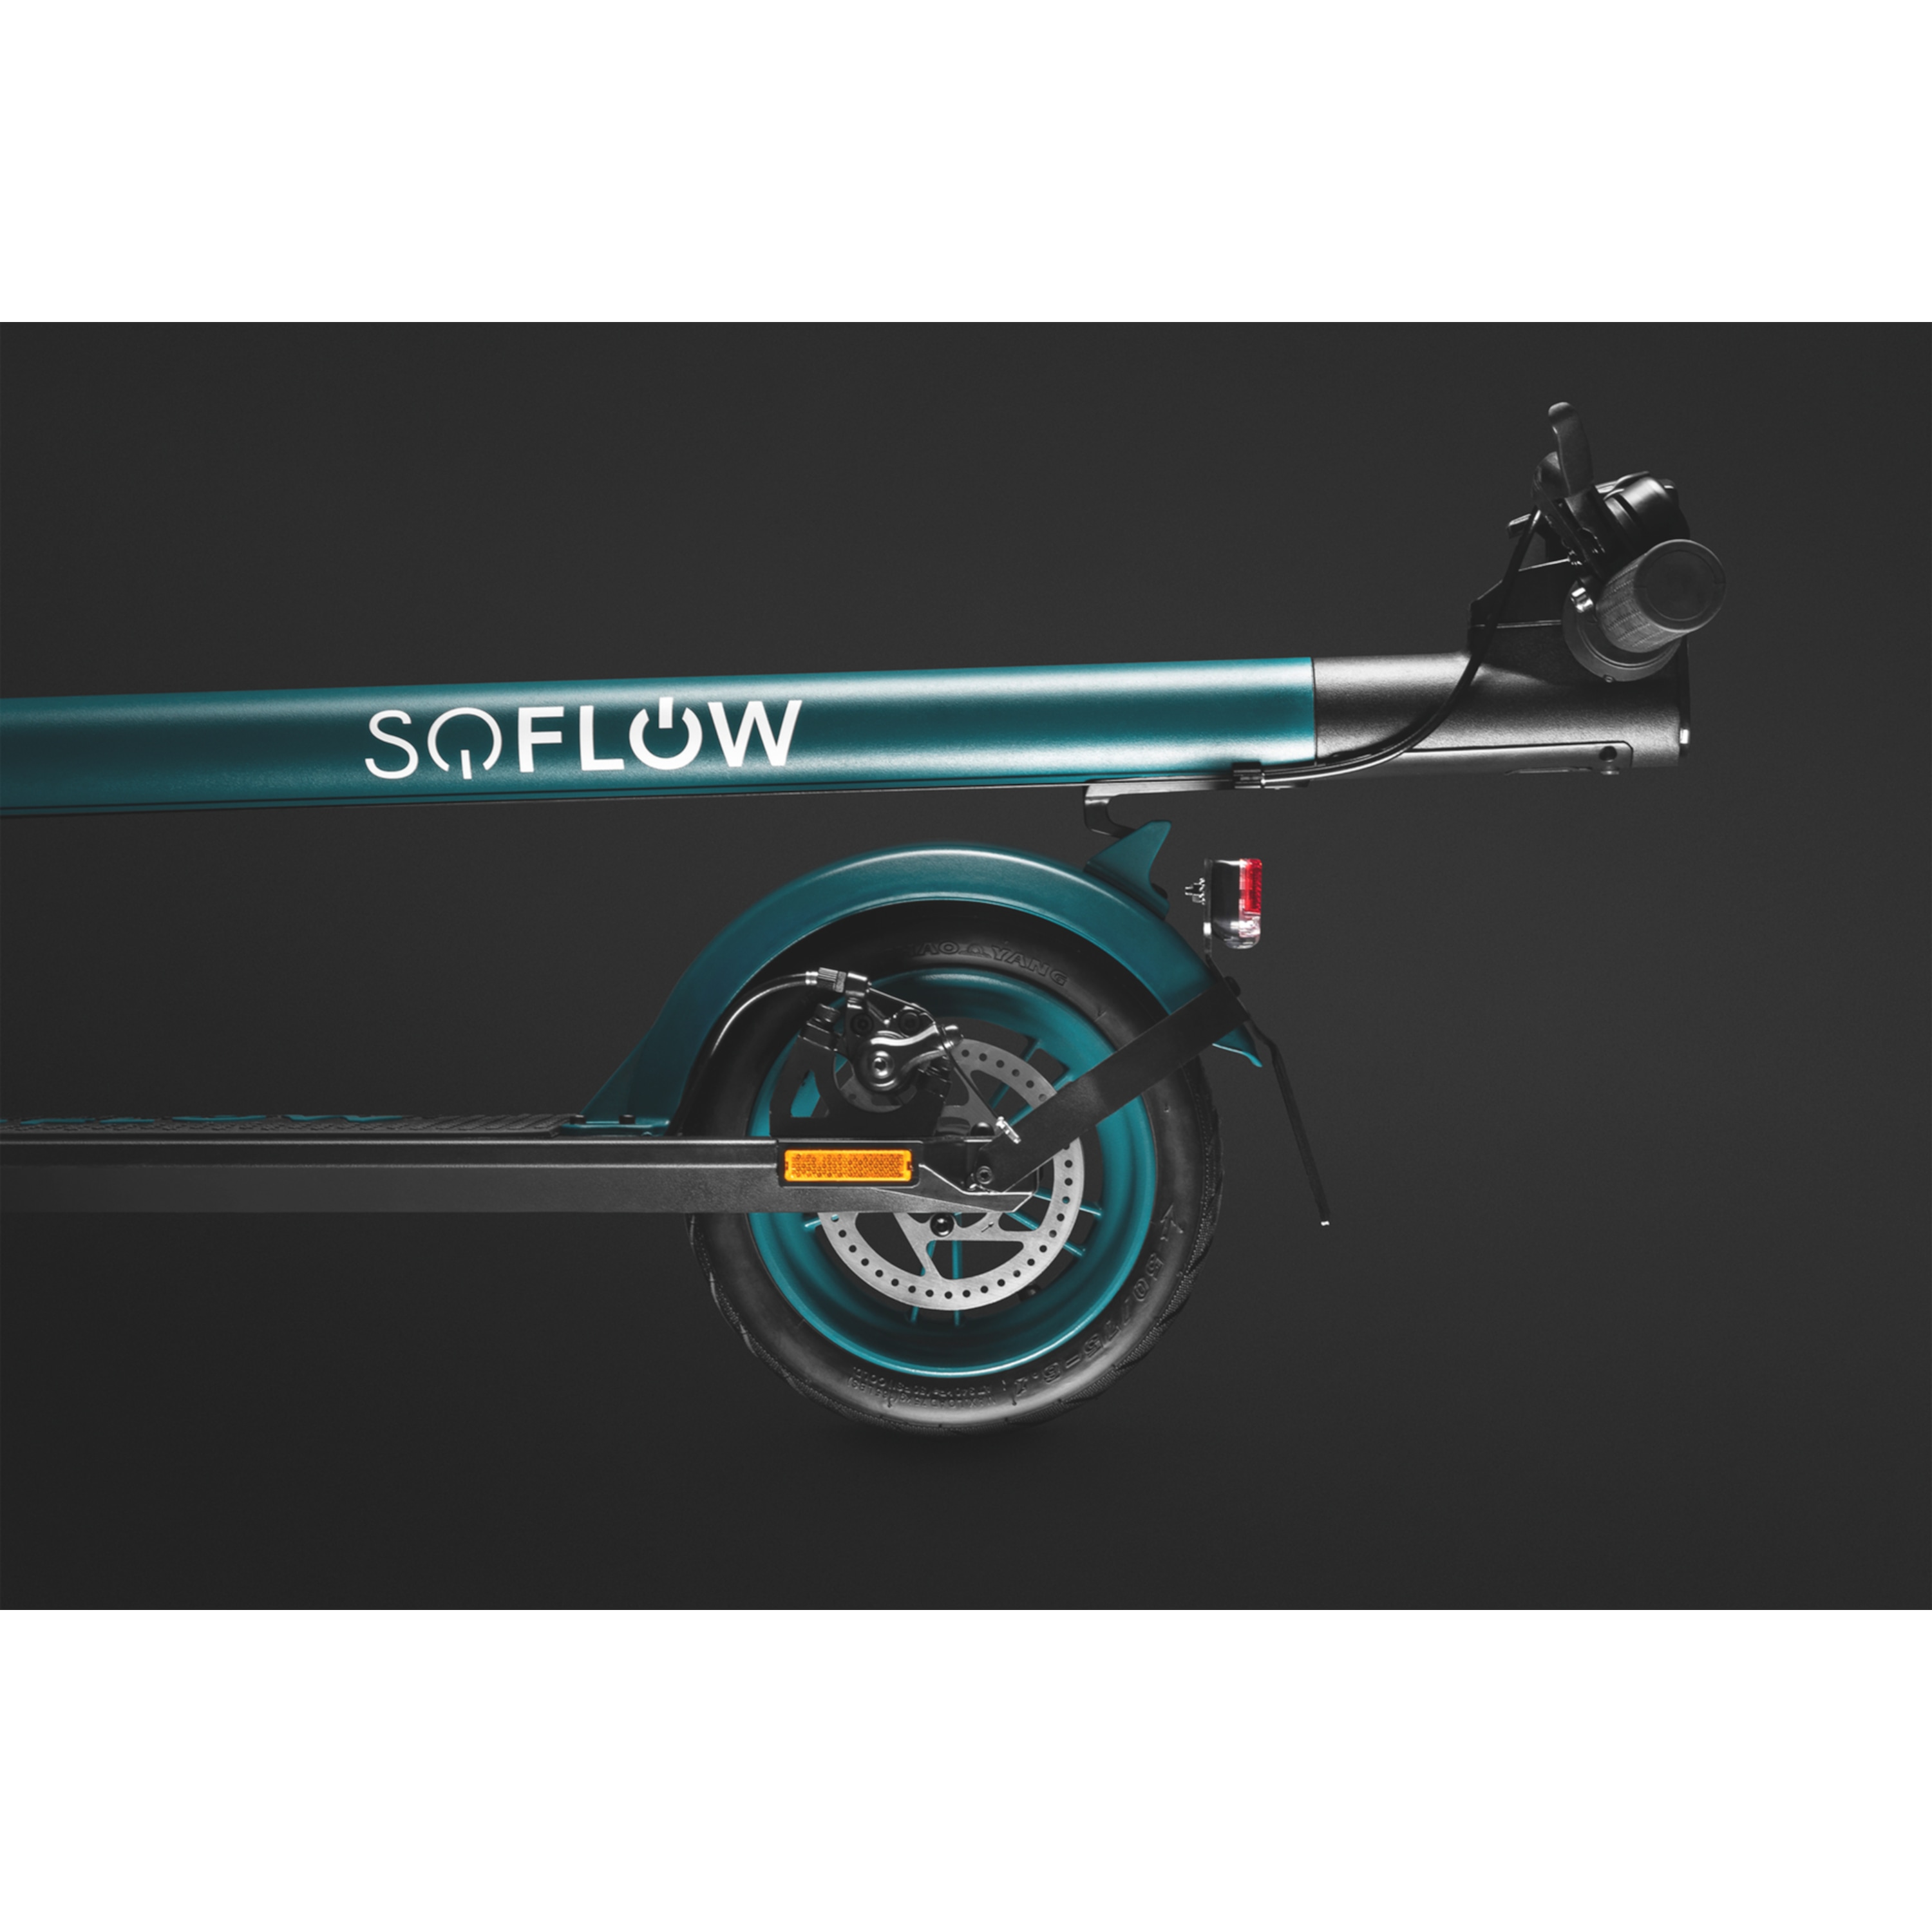 SOFLOW S01 Pro E-Scooter, mit deutscher Straßenzulassung, kompaktes Design und niedriges Gewicht, perfekt geeignet als Ergänzung zum öffentlichen Verkehr